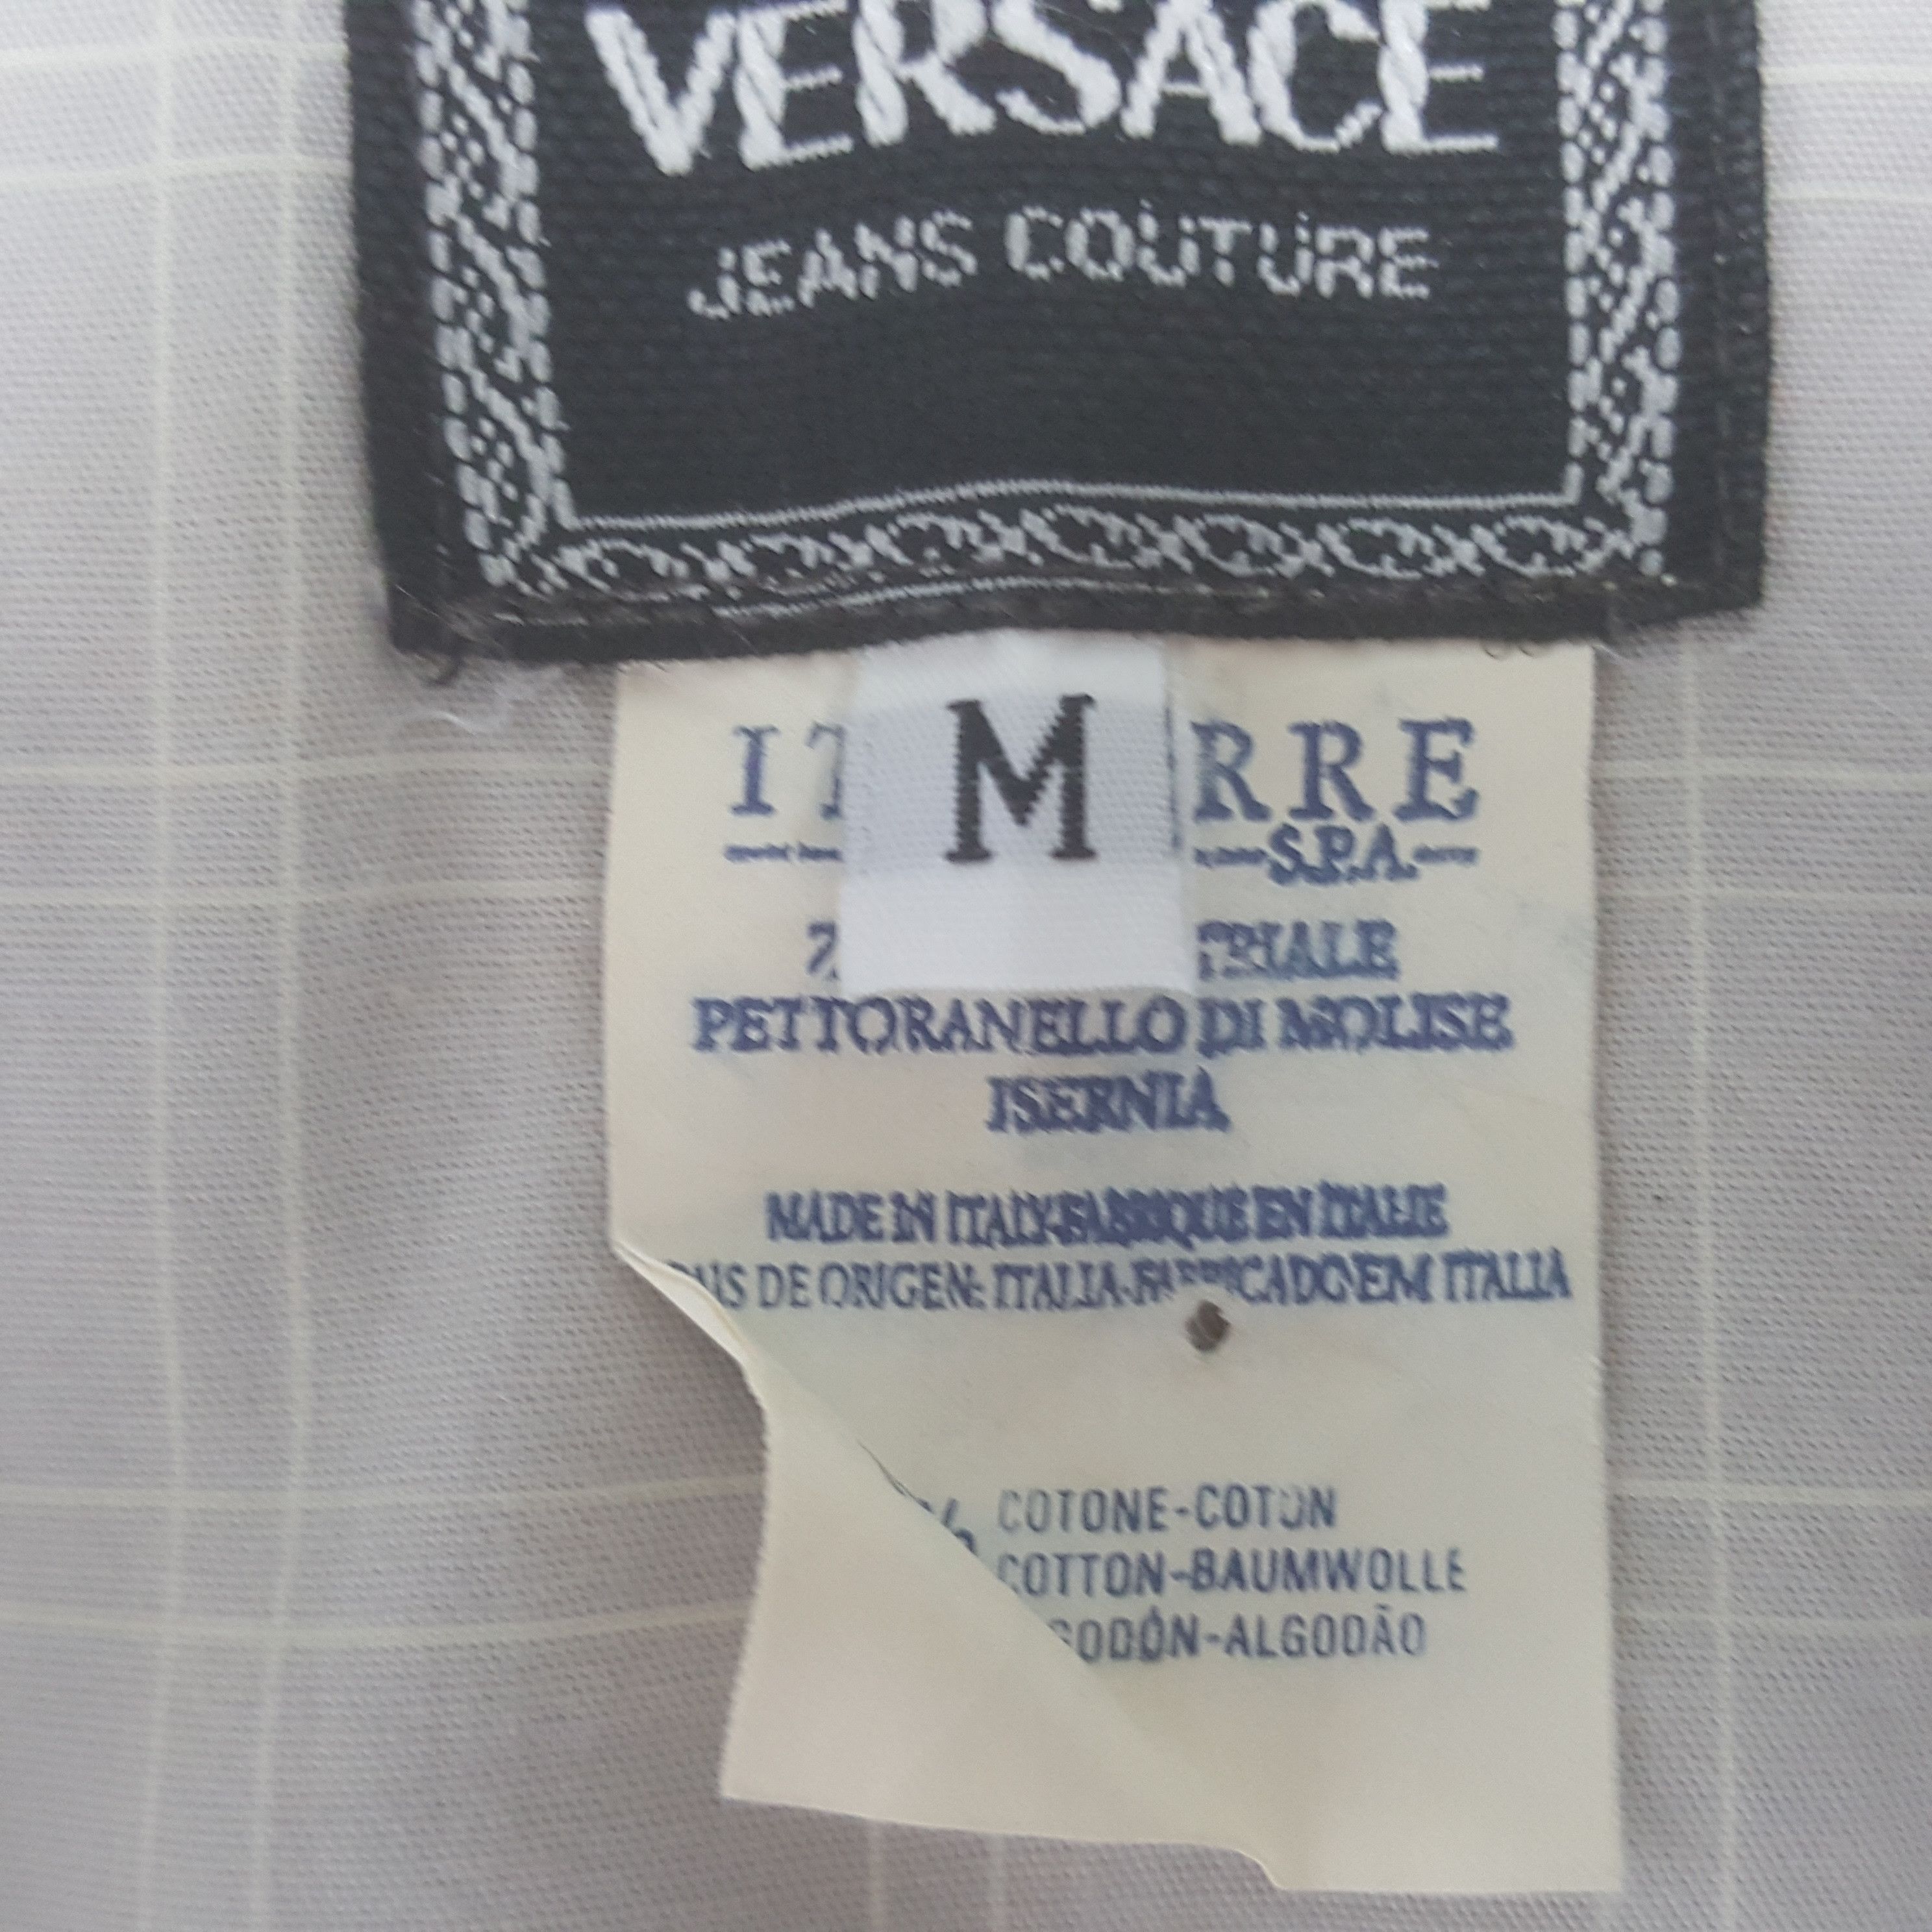 Vintage Vintage Versace Worker Button Up Shirt Size US L / EU 52-54 / 3 - 5 Thumbnail